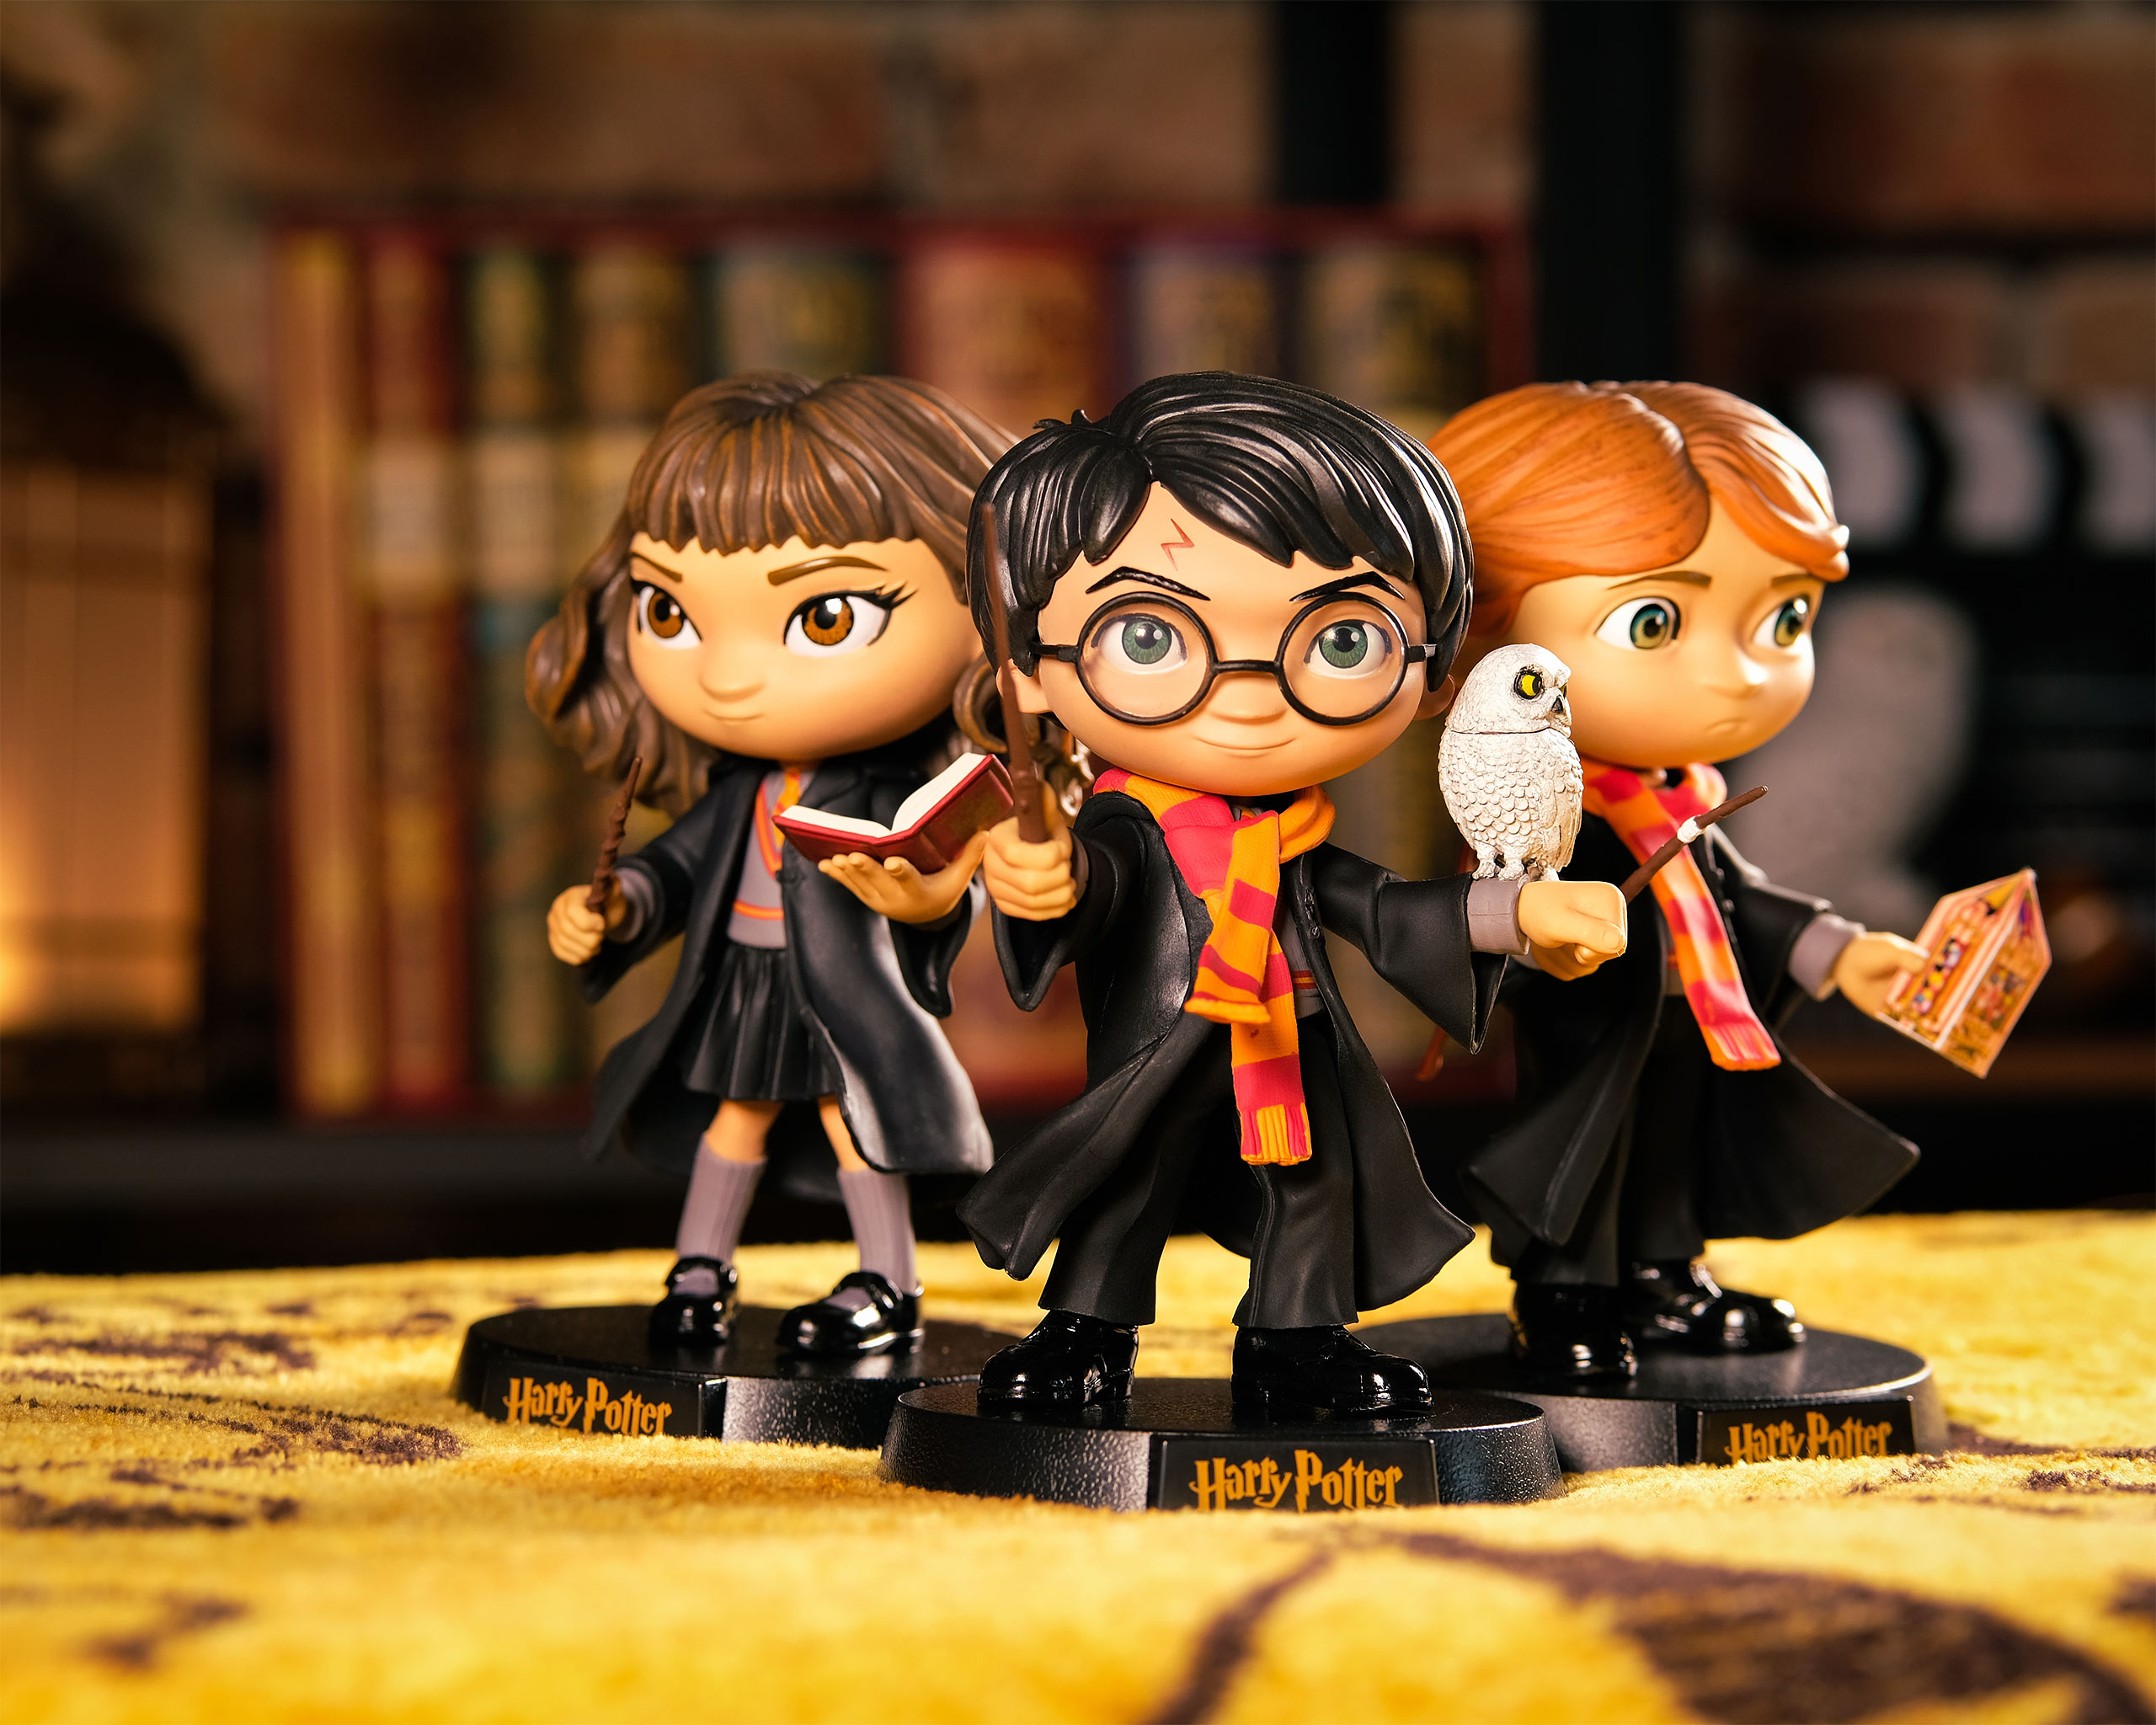 Harry Potter Minico figure